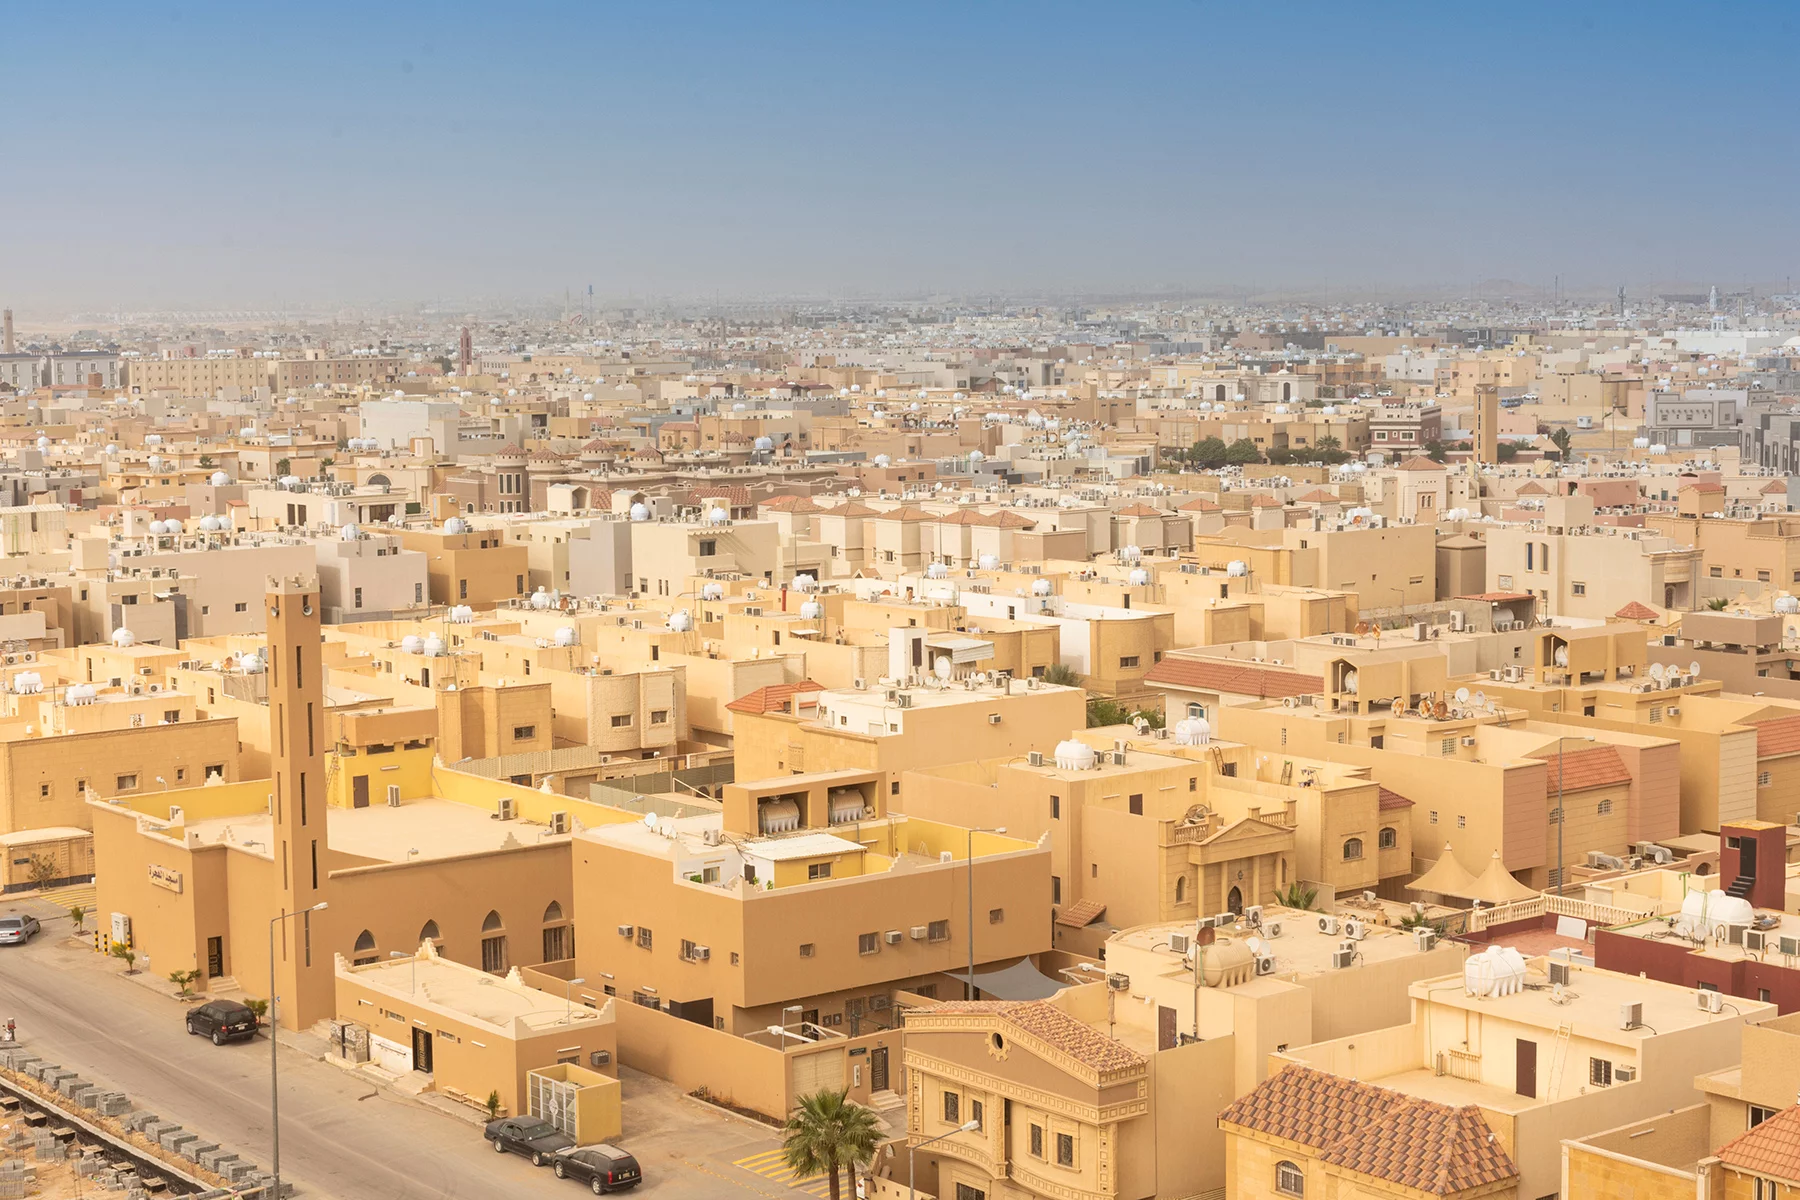 Typical residential buildings in Riyadh